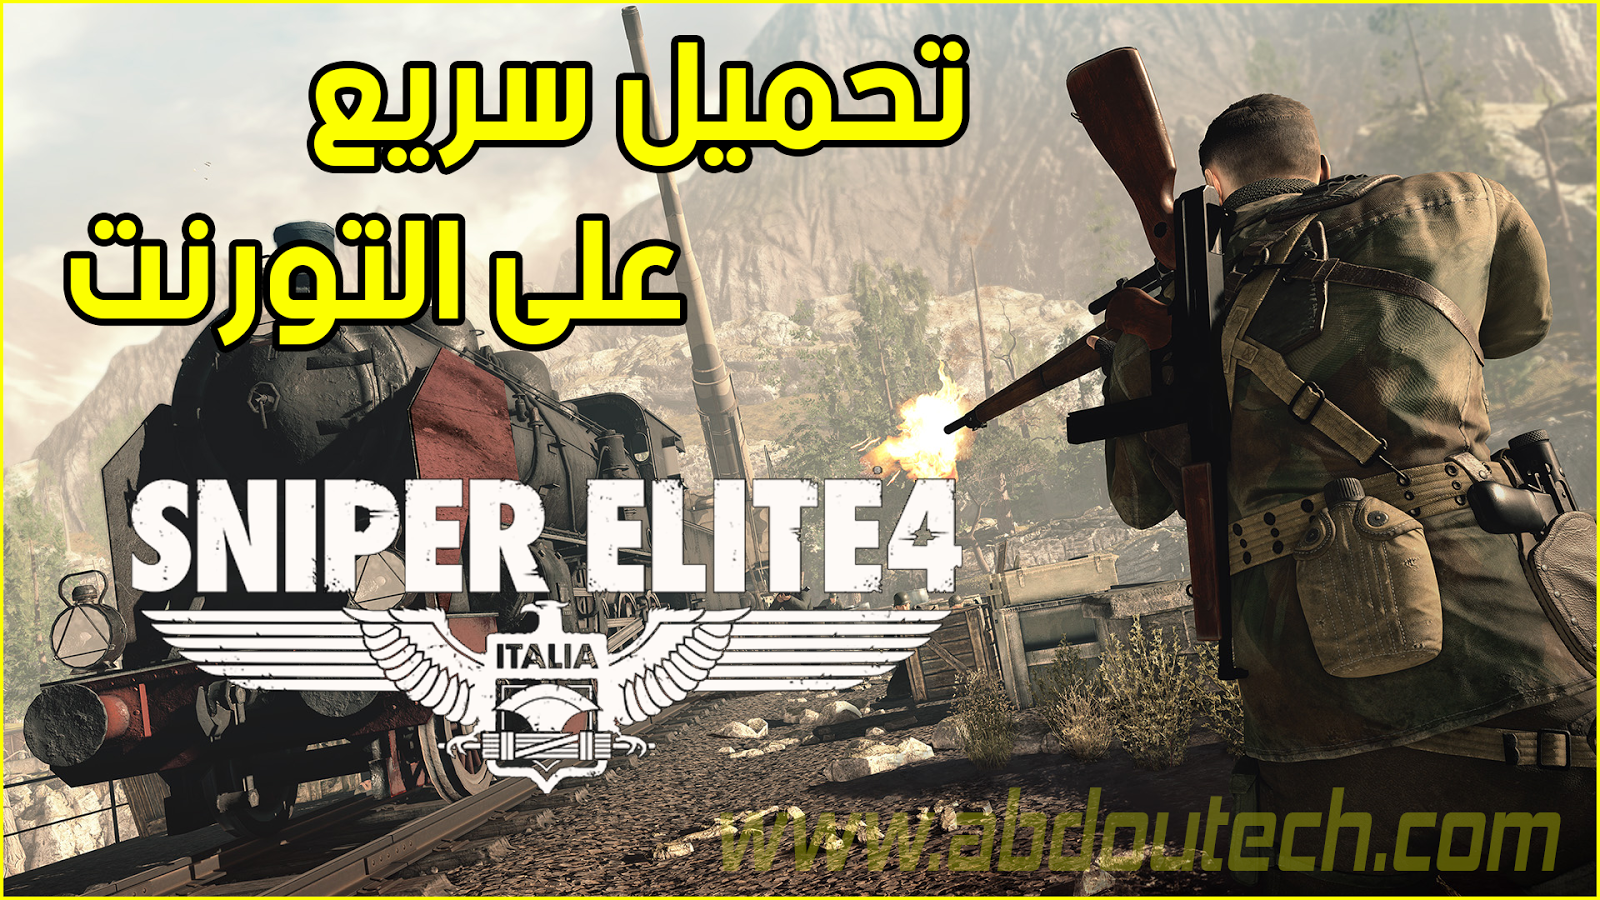 تحميل لعبة sniper elite 4 على الحاسوب رابط التحميل على التورنت يدعم الاستكمال pc